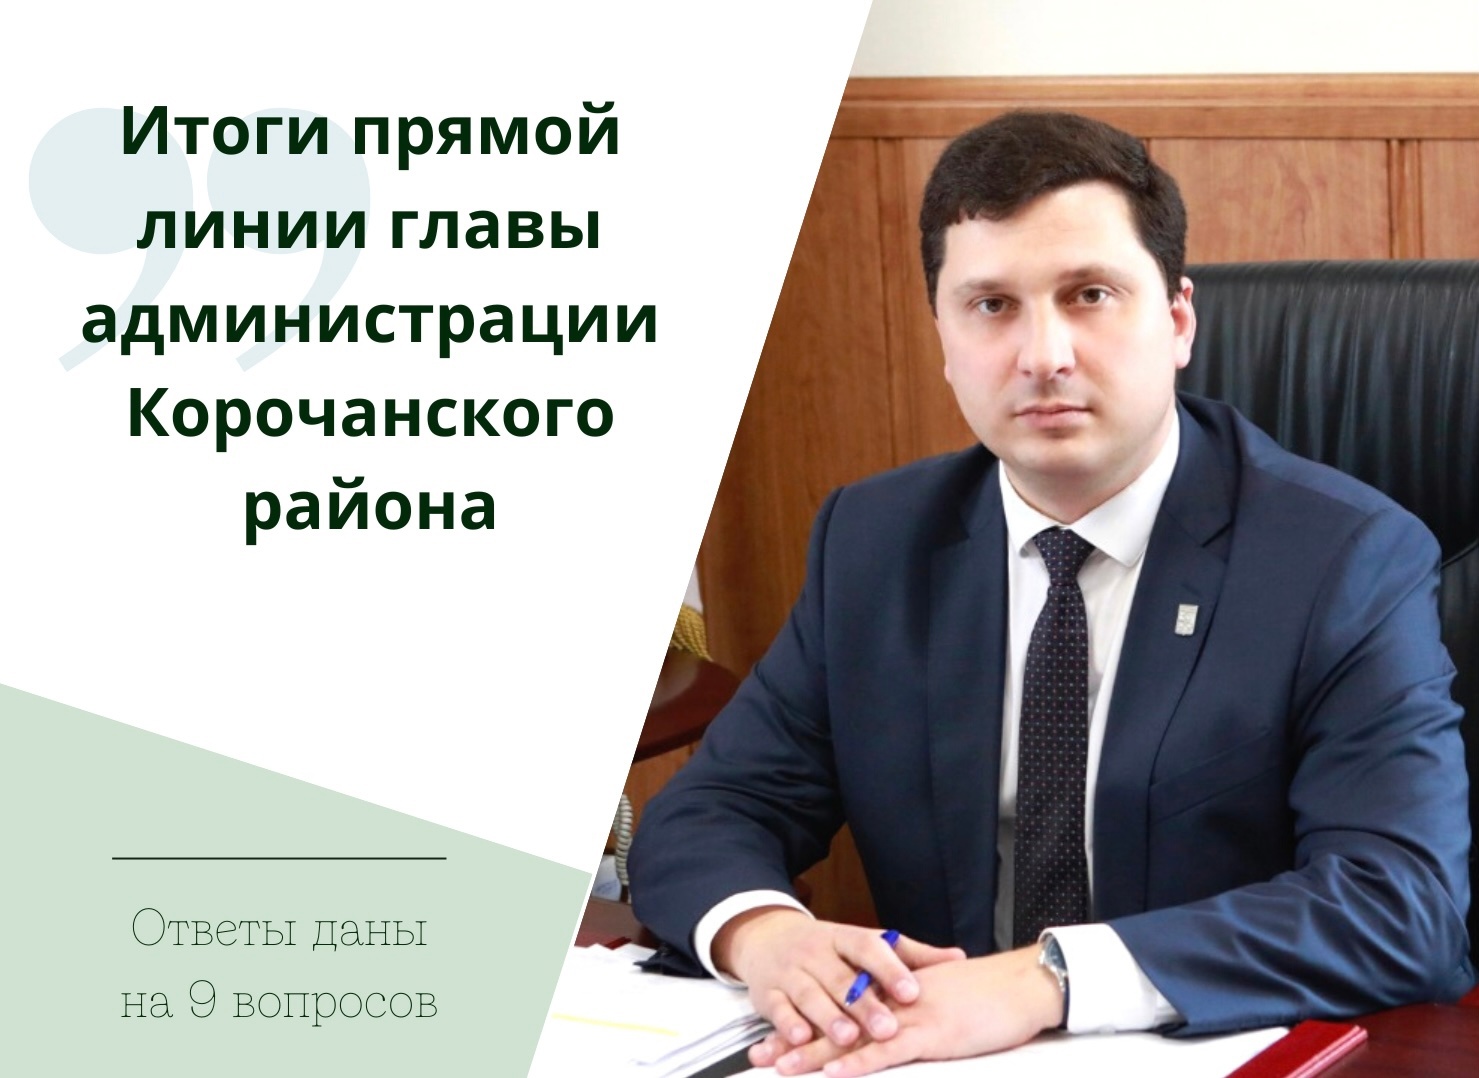 В ходе ежедневной прямой линии глава администрации района Николай Нестеров дал ответы на 9 вопросов